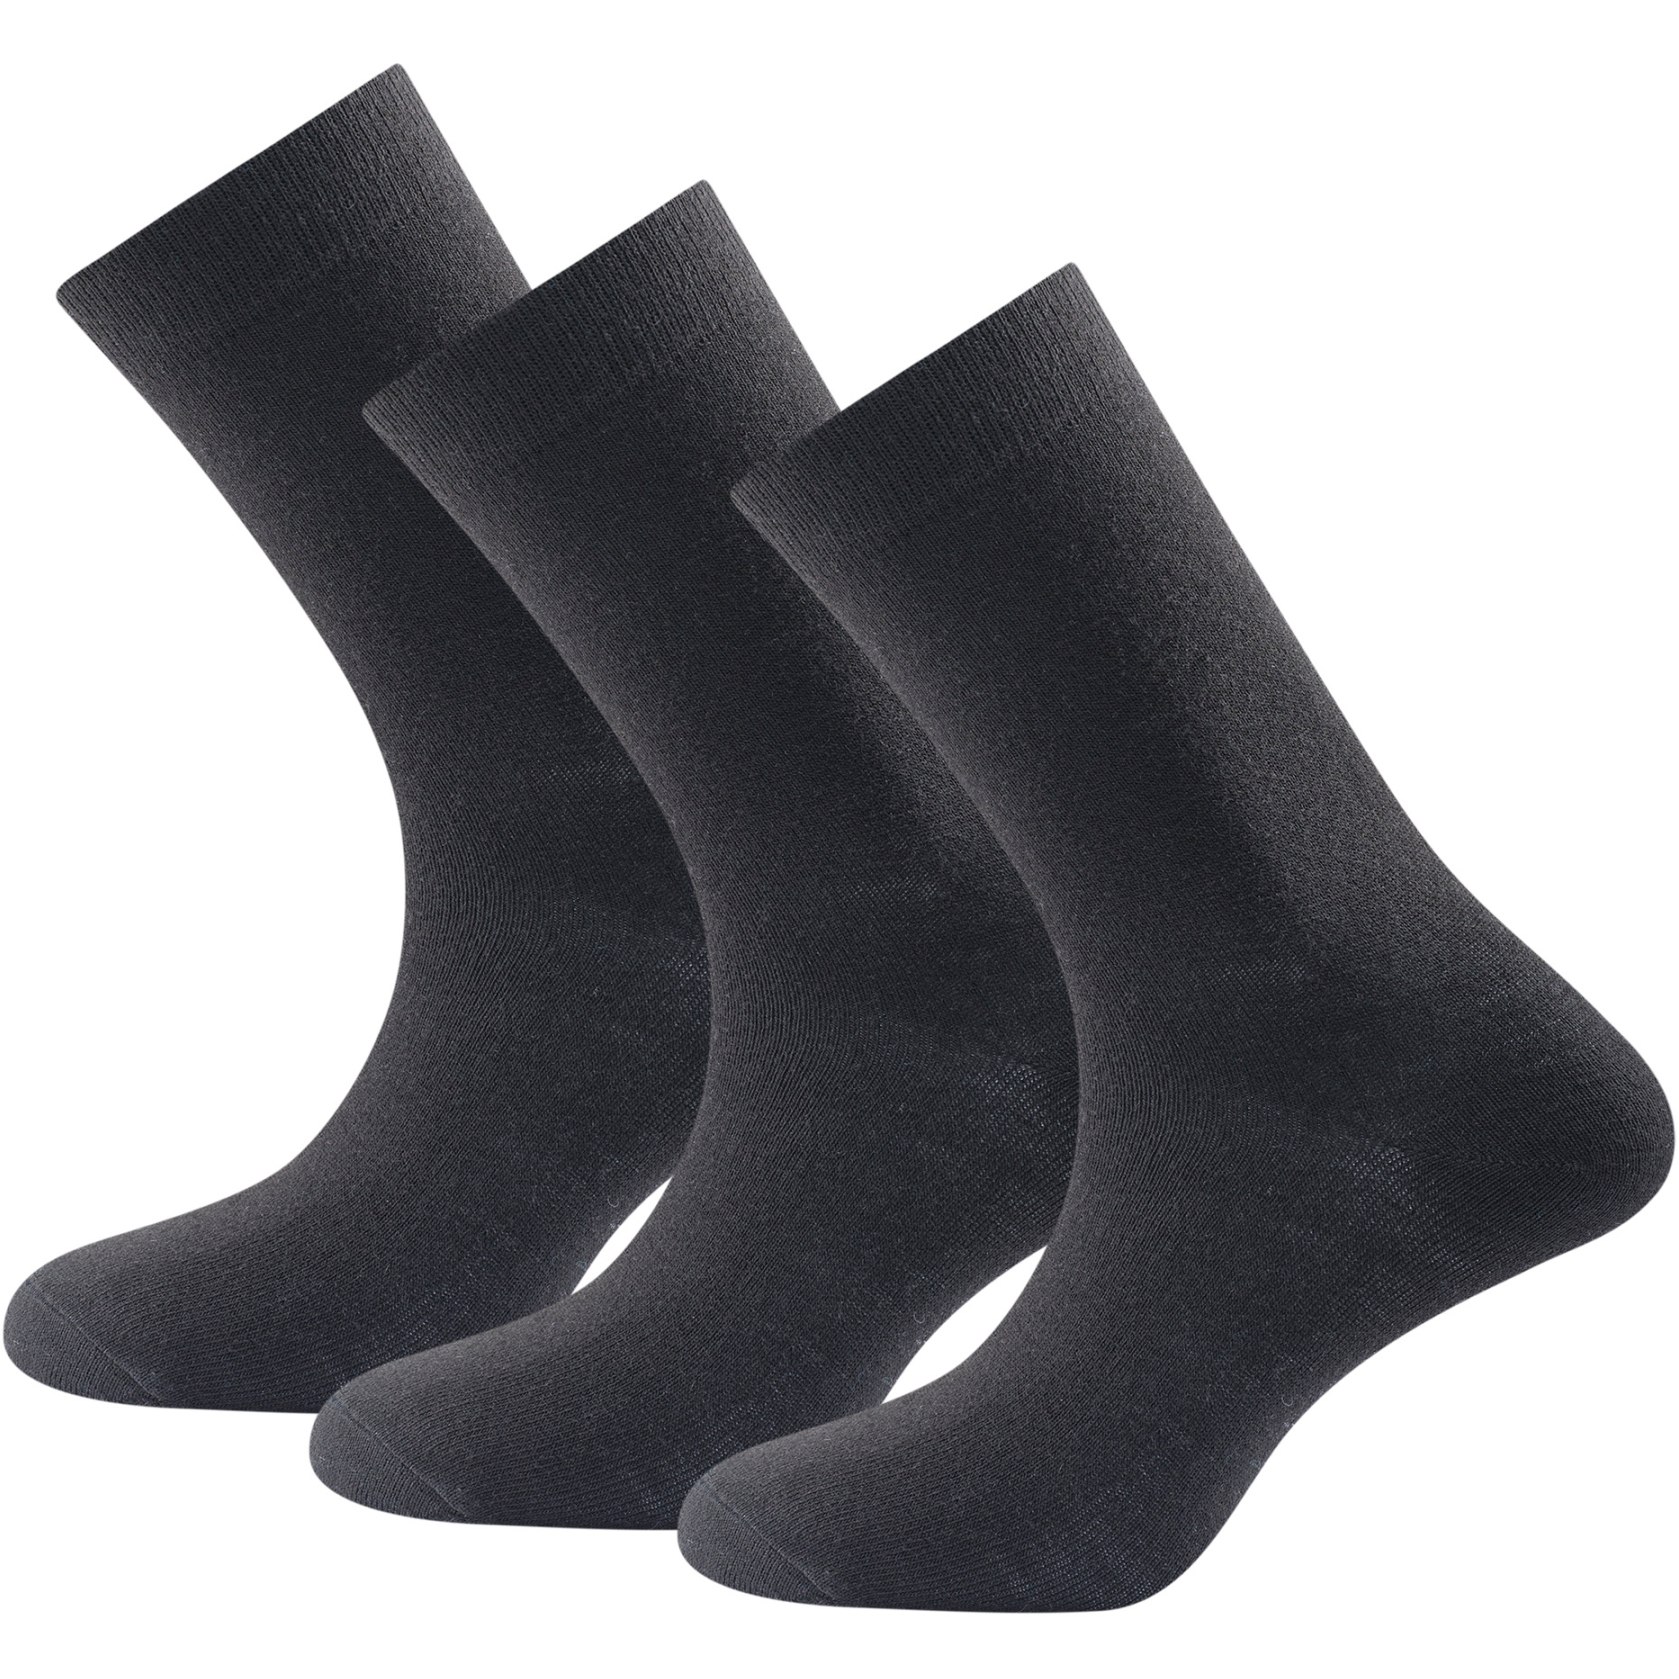 Productfoto van Devold Daily Merino Light Socken (Set van 3) - 950A Zwart